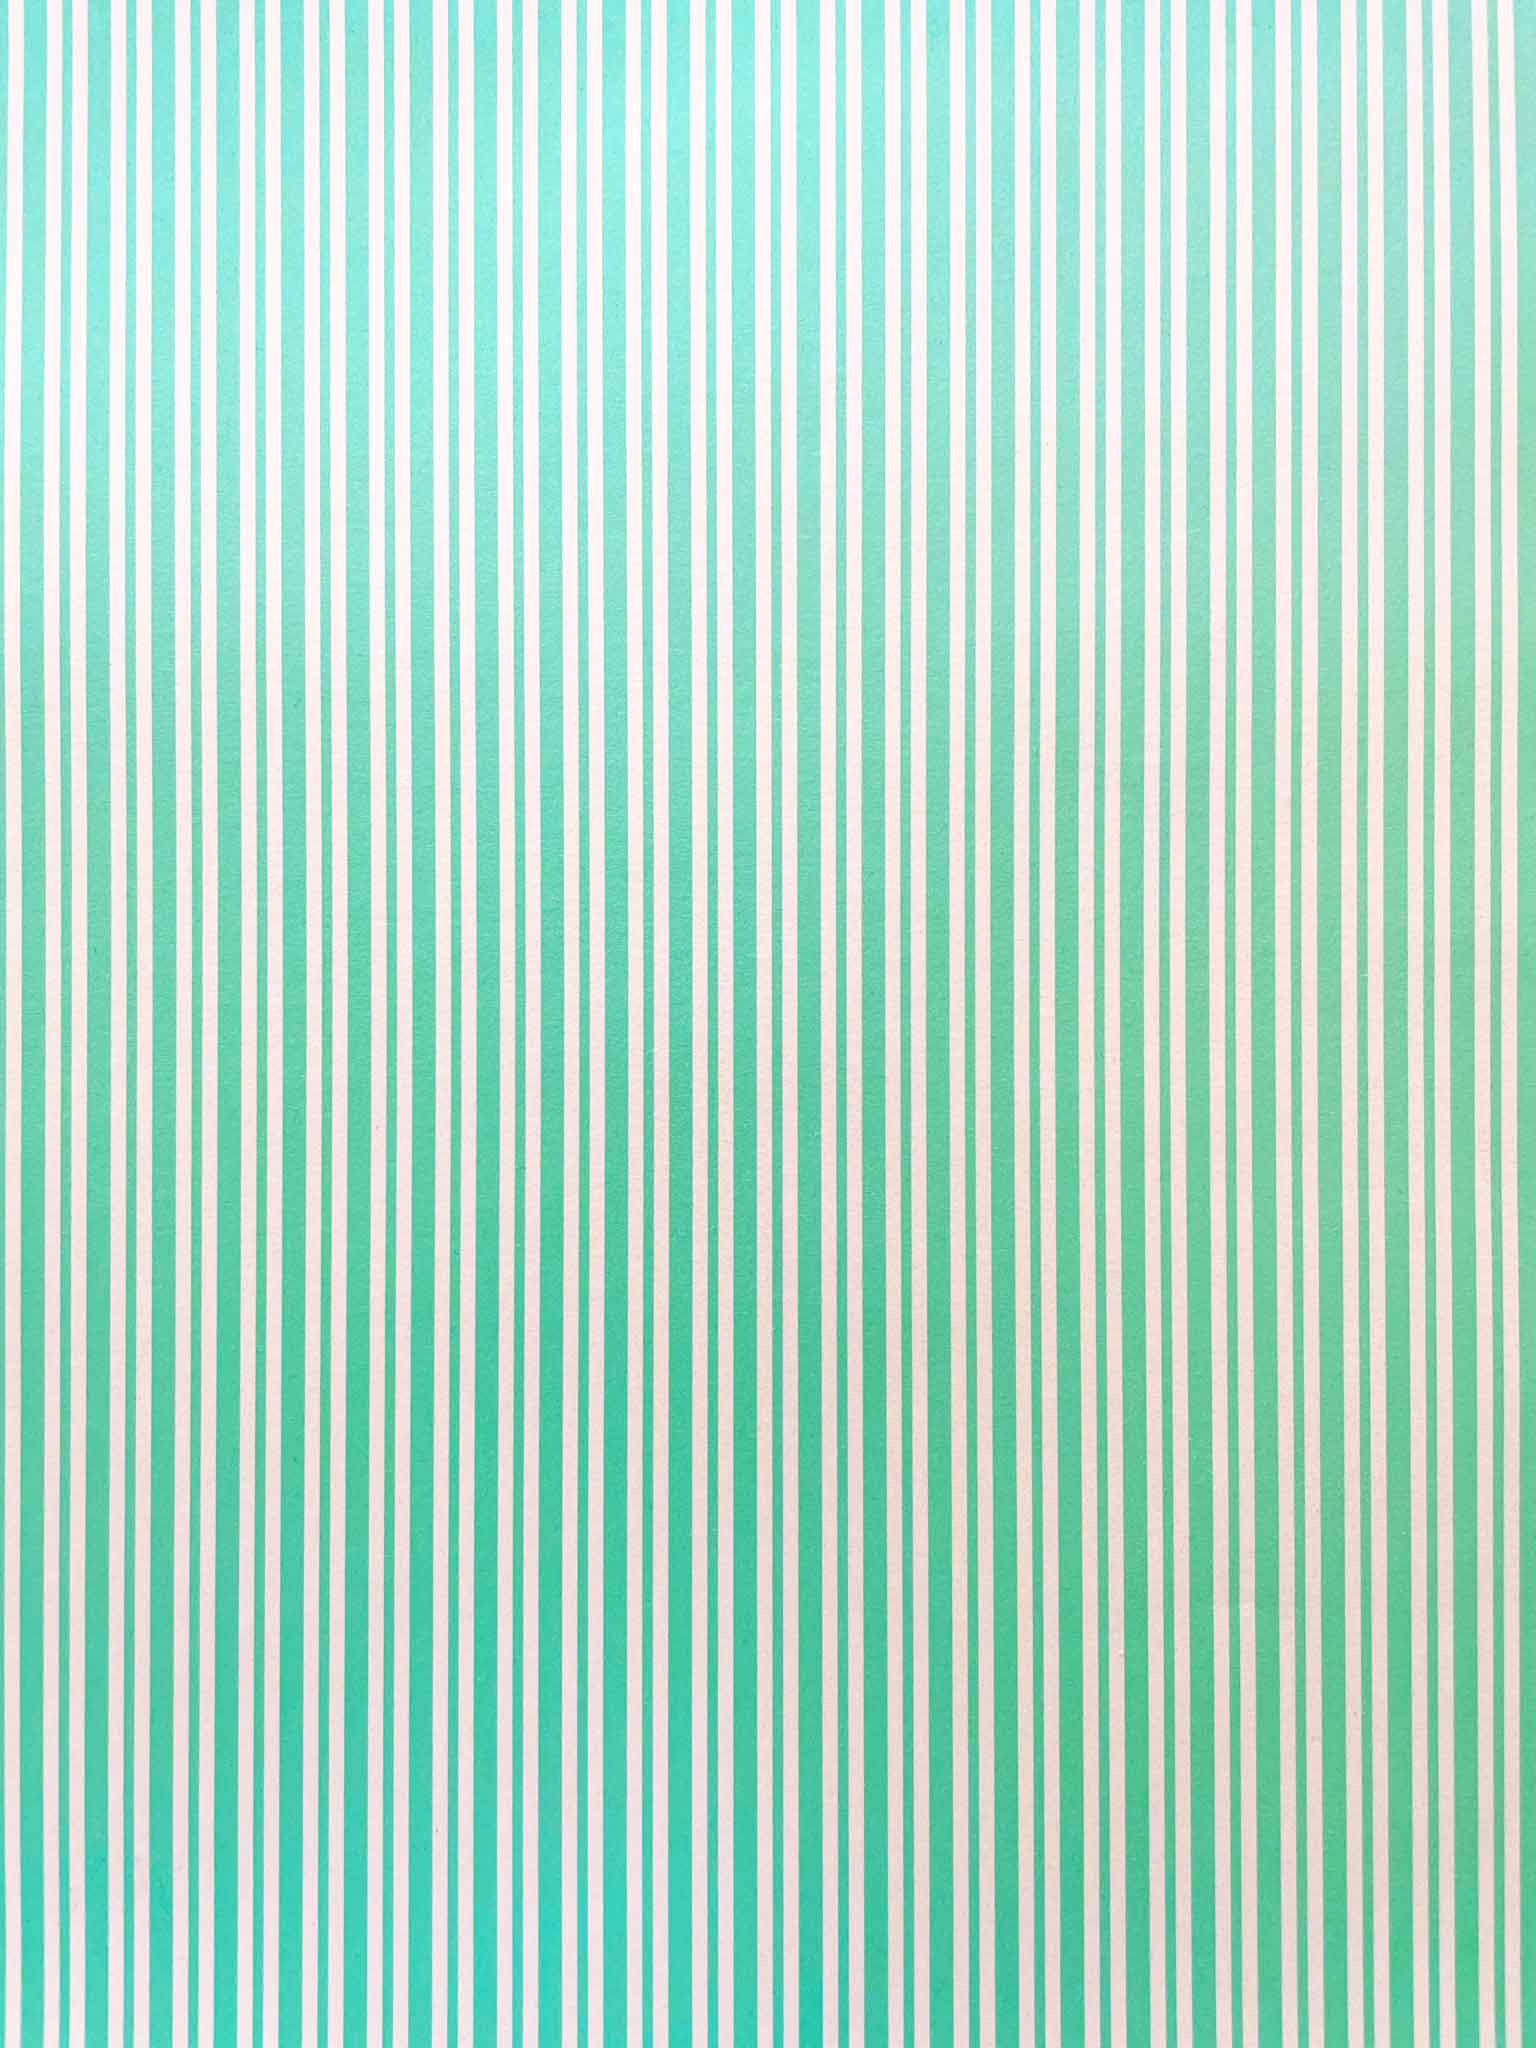 cheltenham-stripe-paper-in-mint